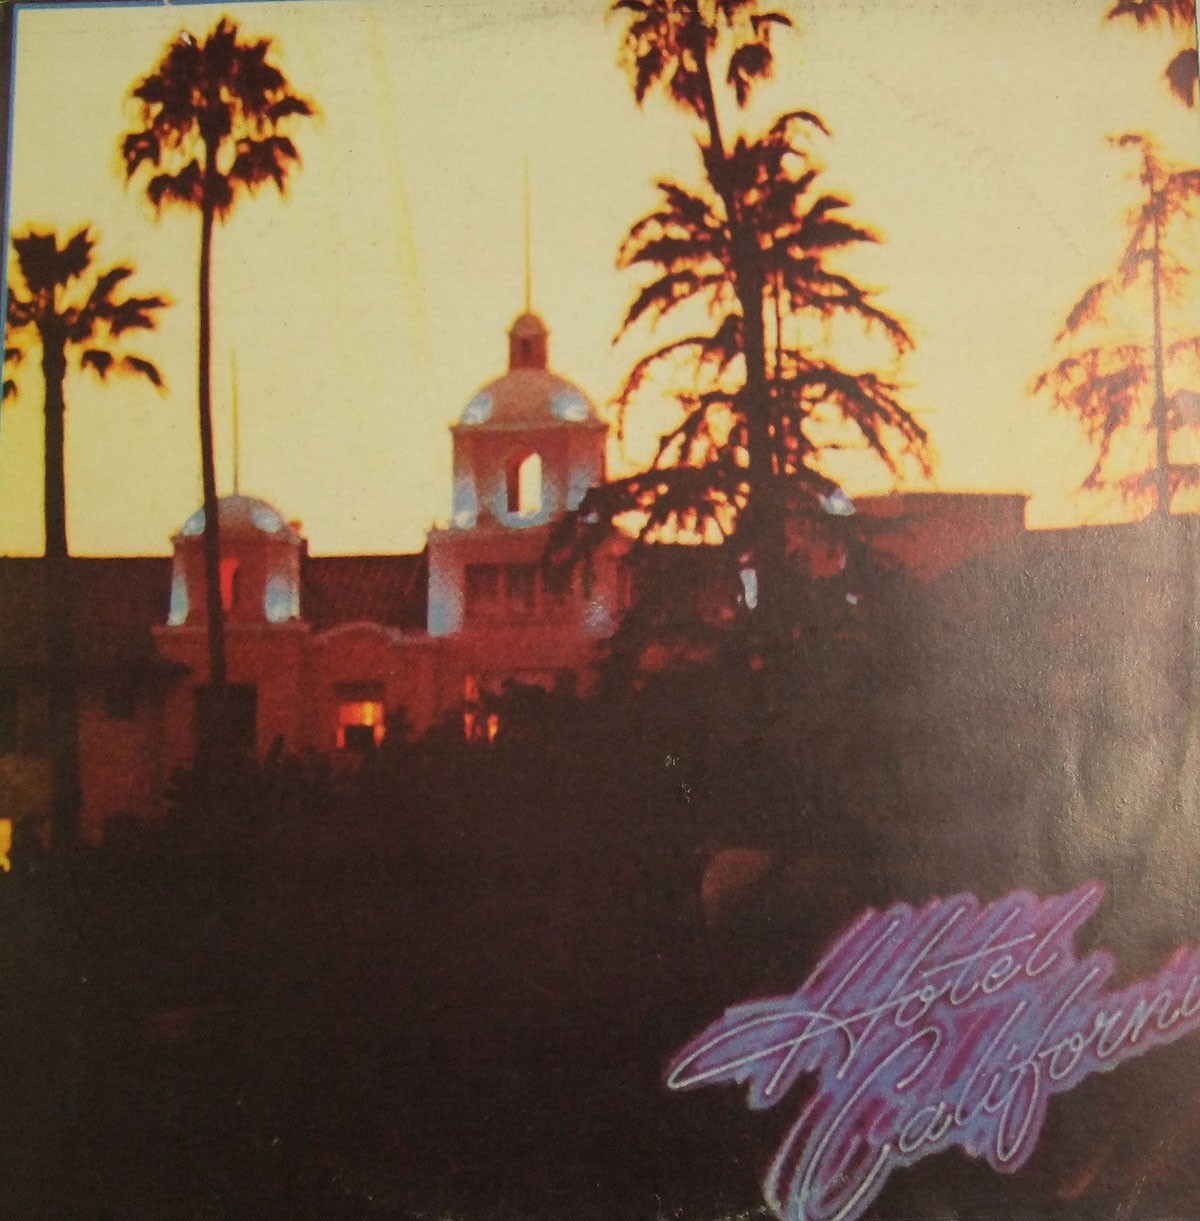 Eagles' "Hotel California" album cover.